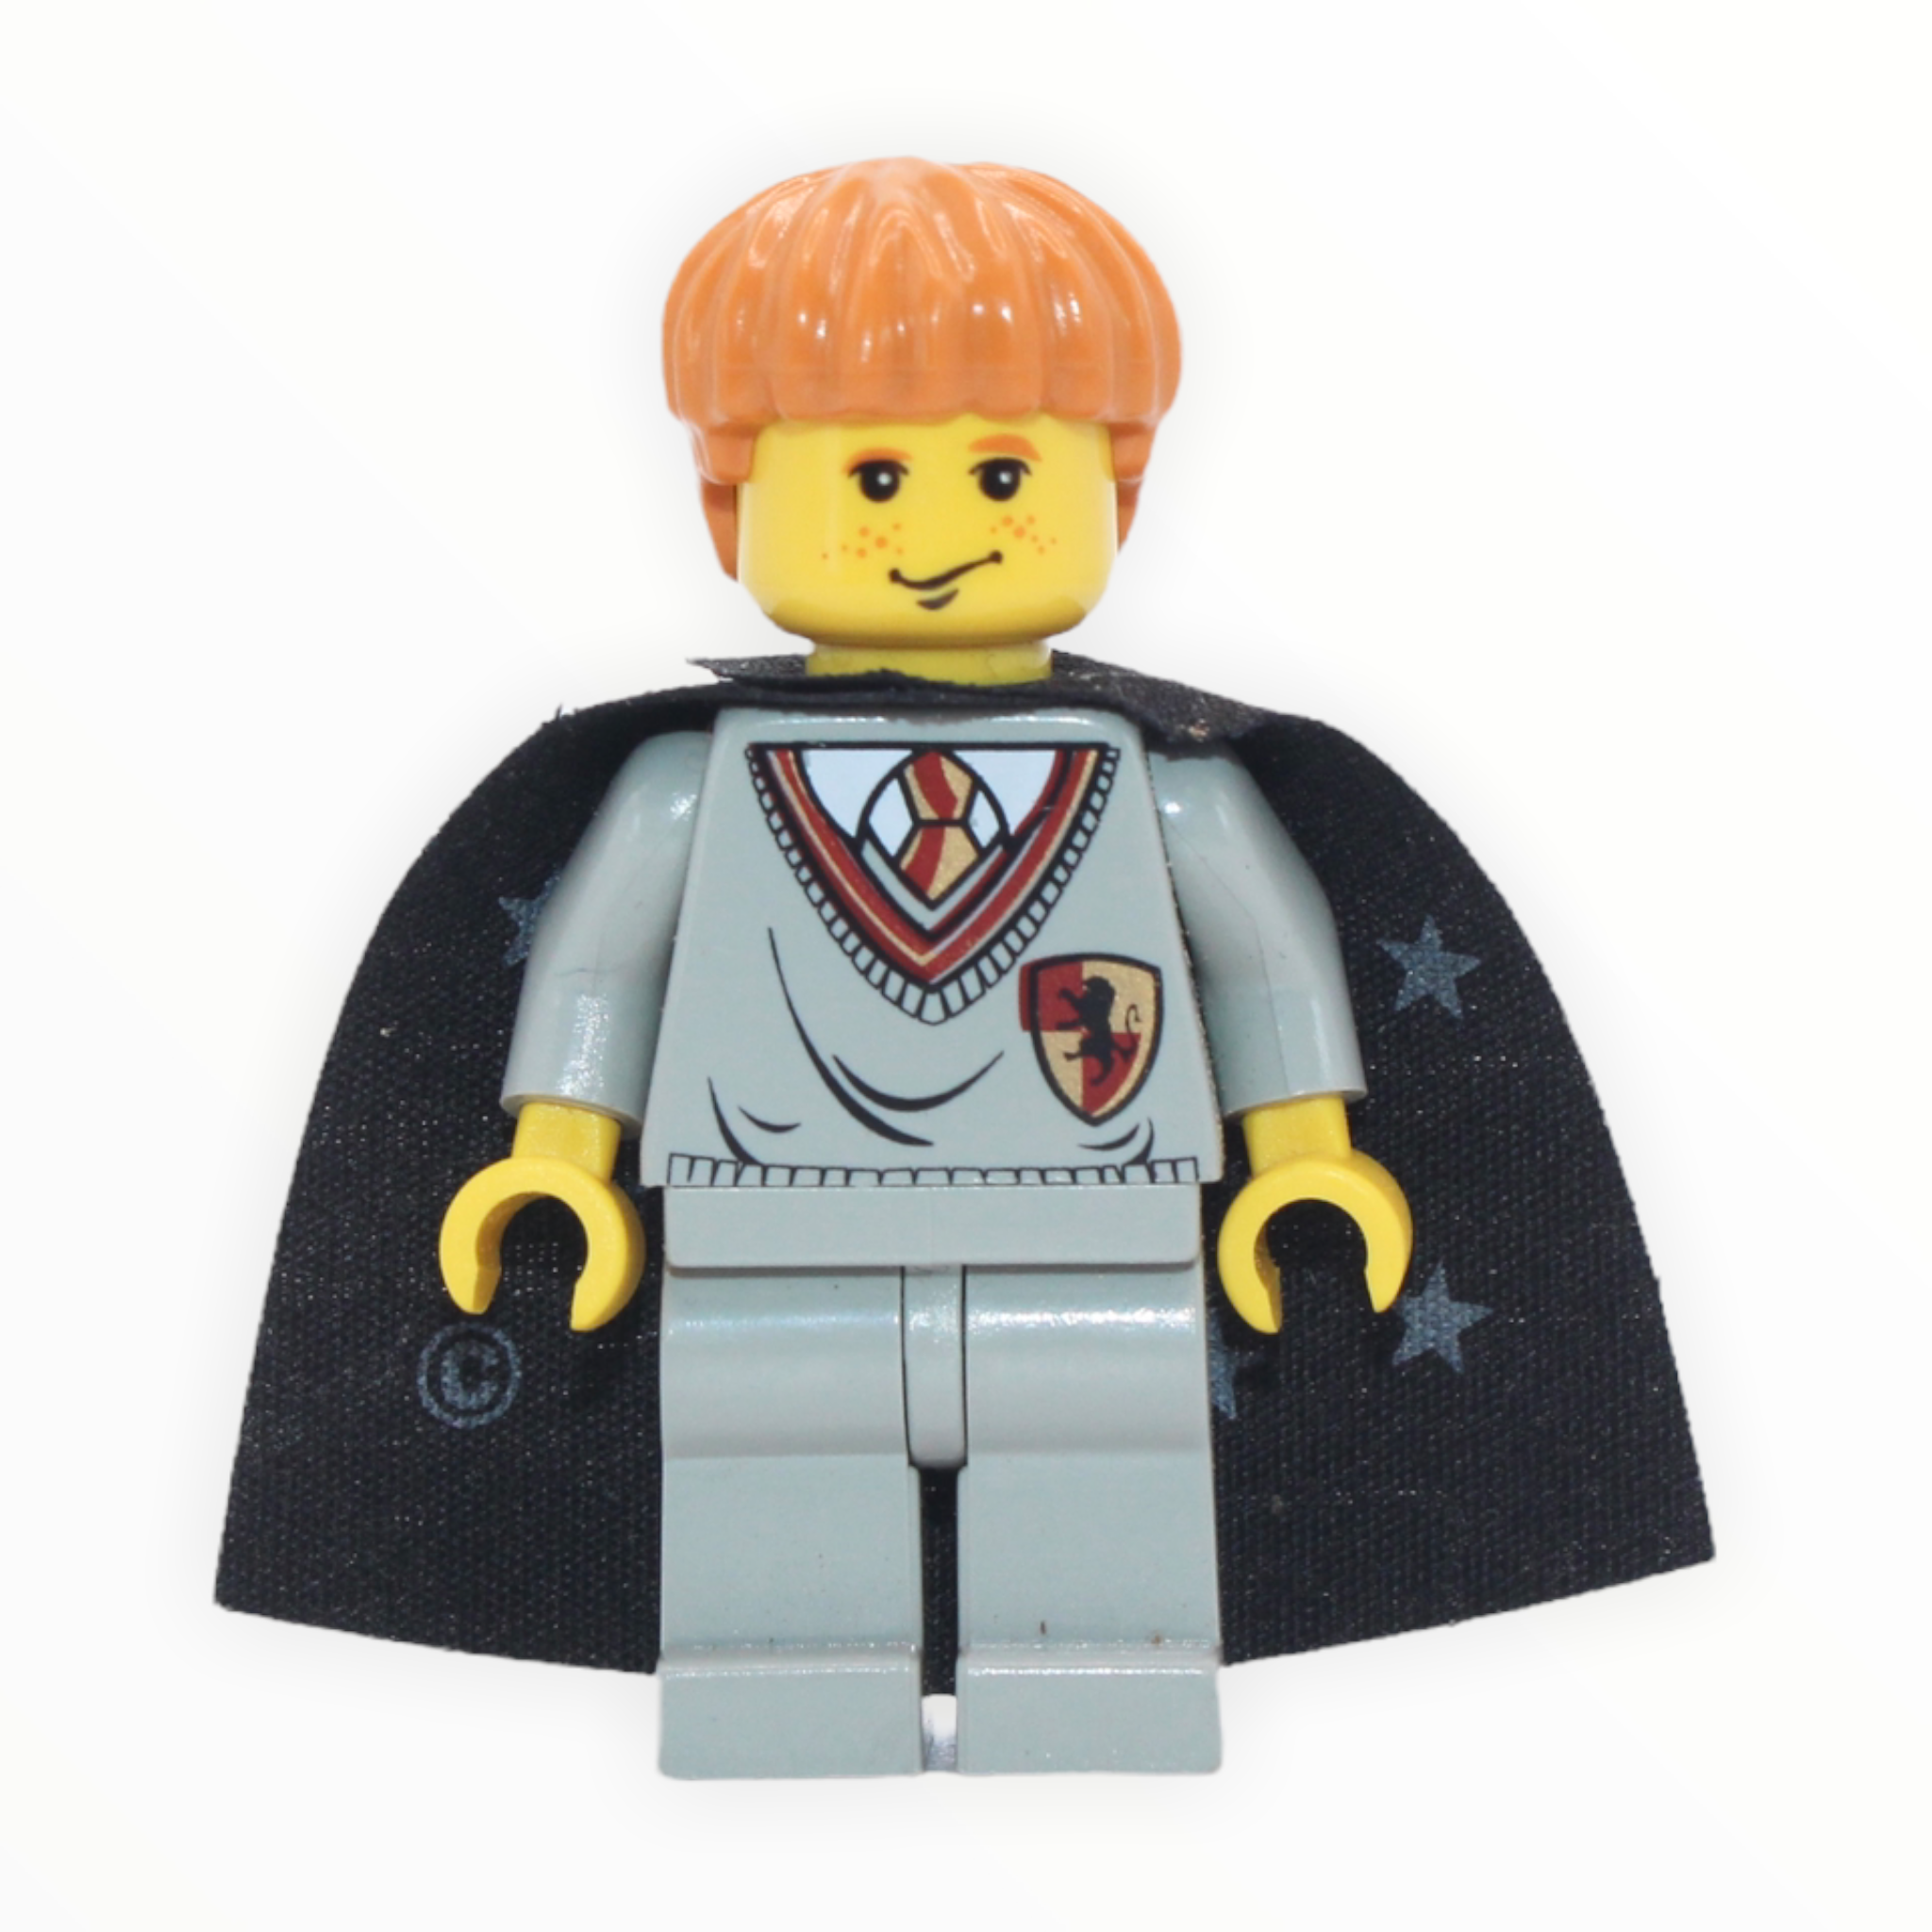 Ron Weasley (Gryffindor sweater, star cape, yellow skin)